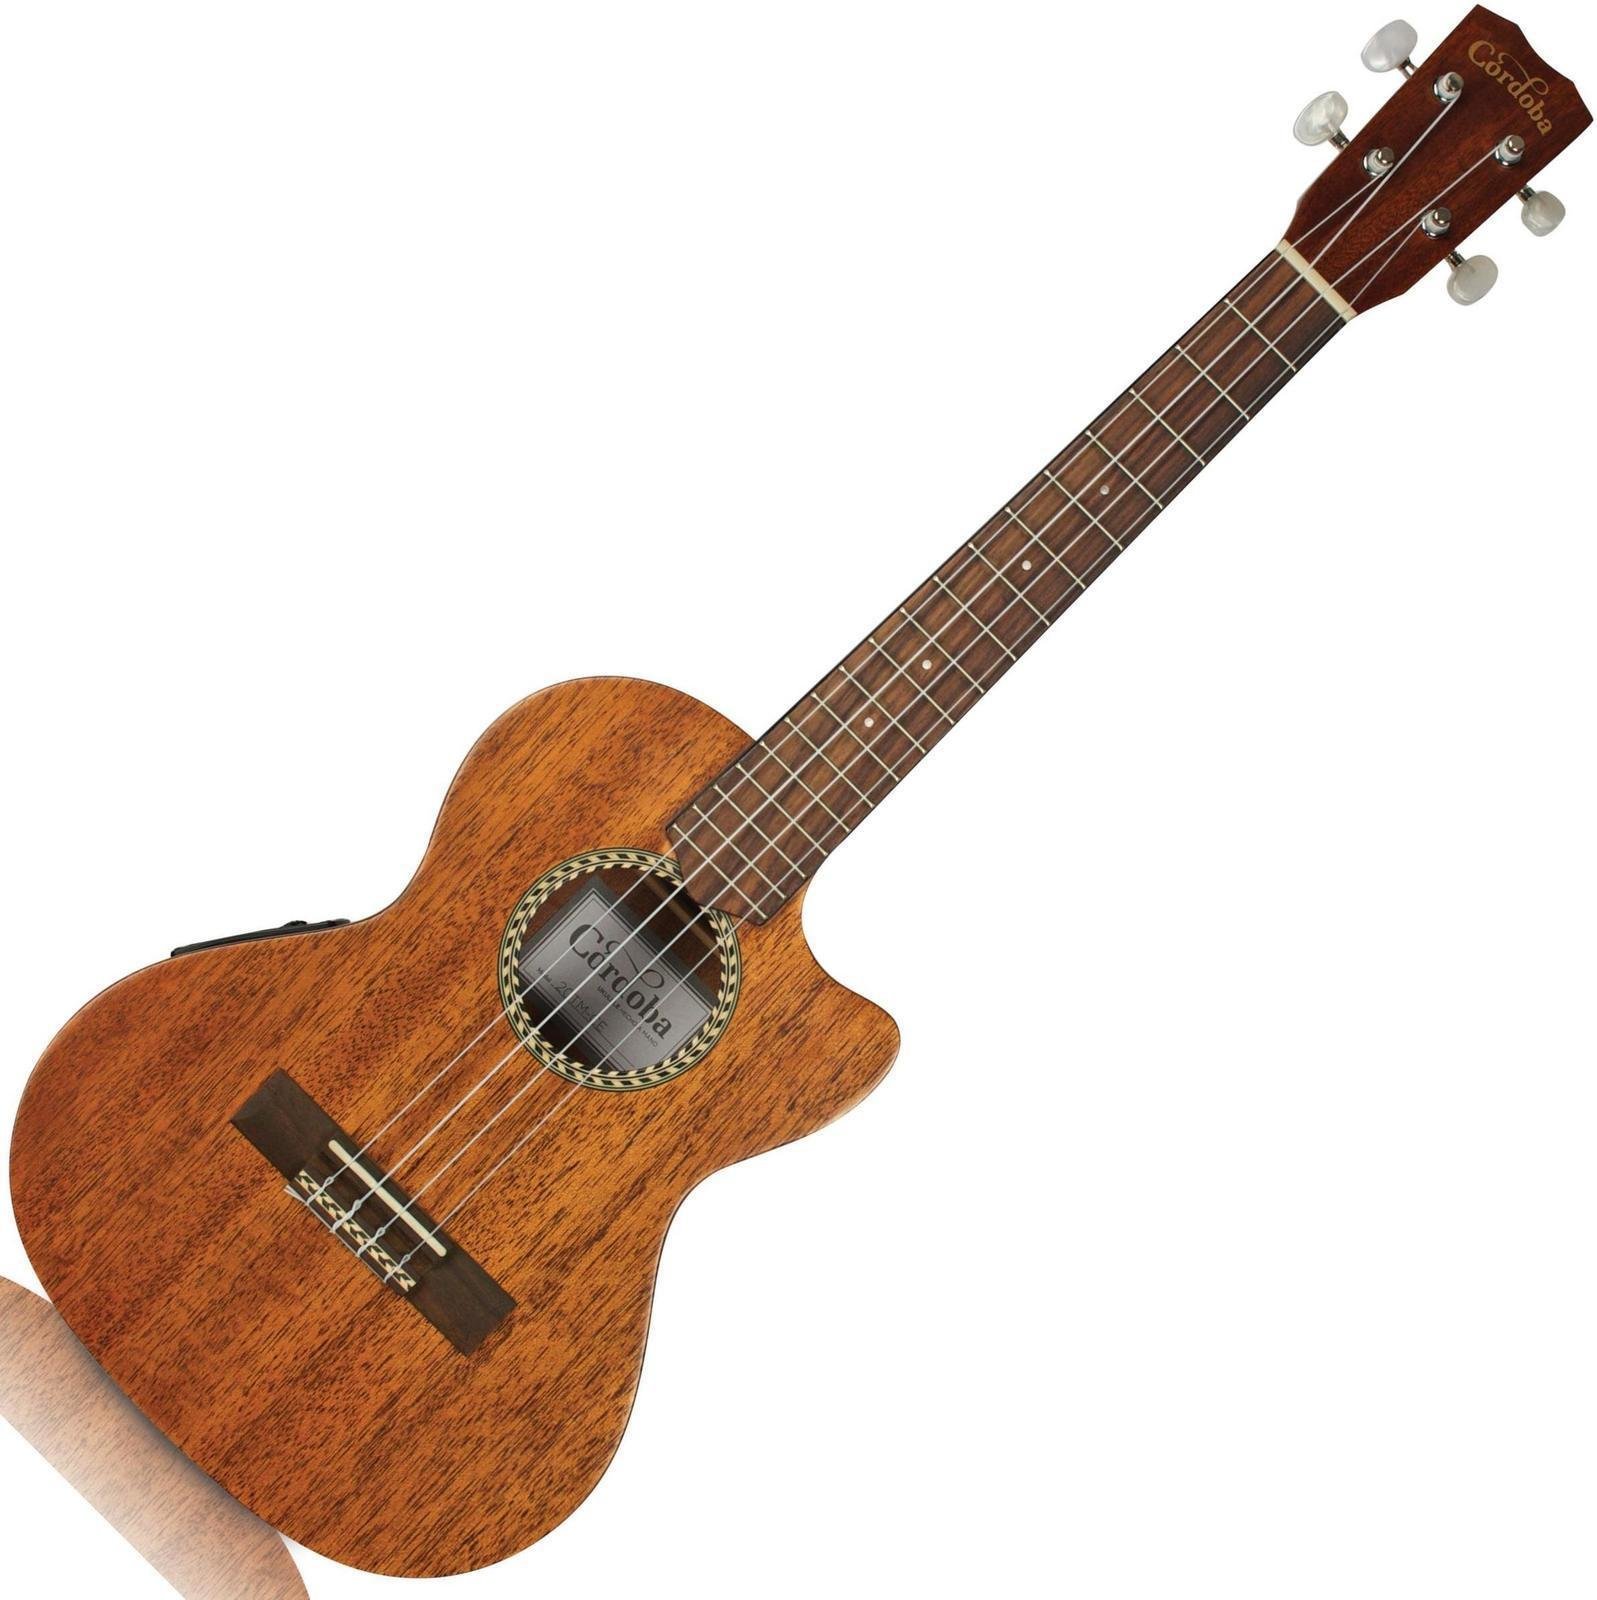 Tenor ukulele Cordoba 20TM-CE Tenor ukulele Natural